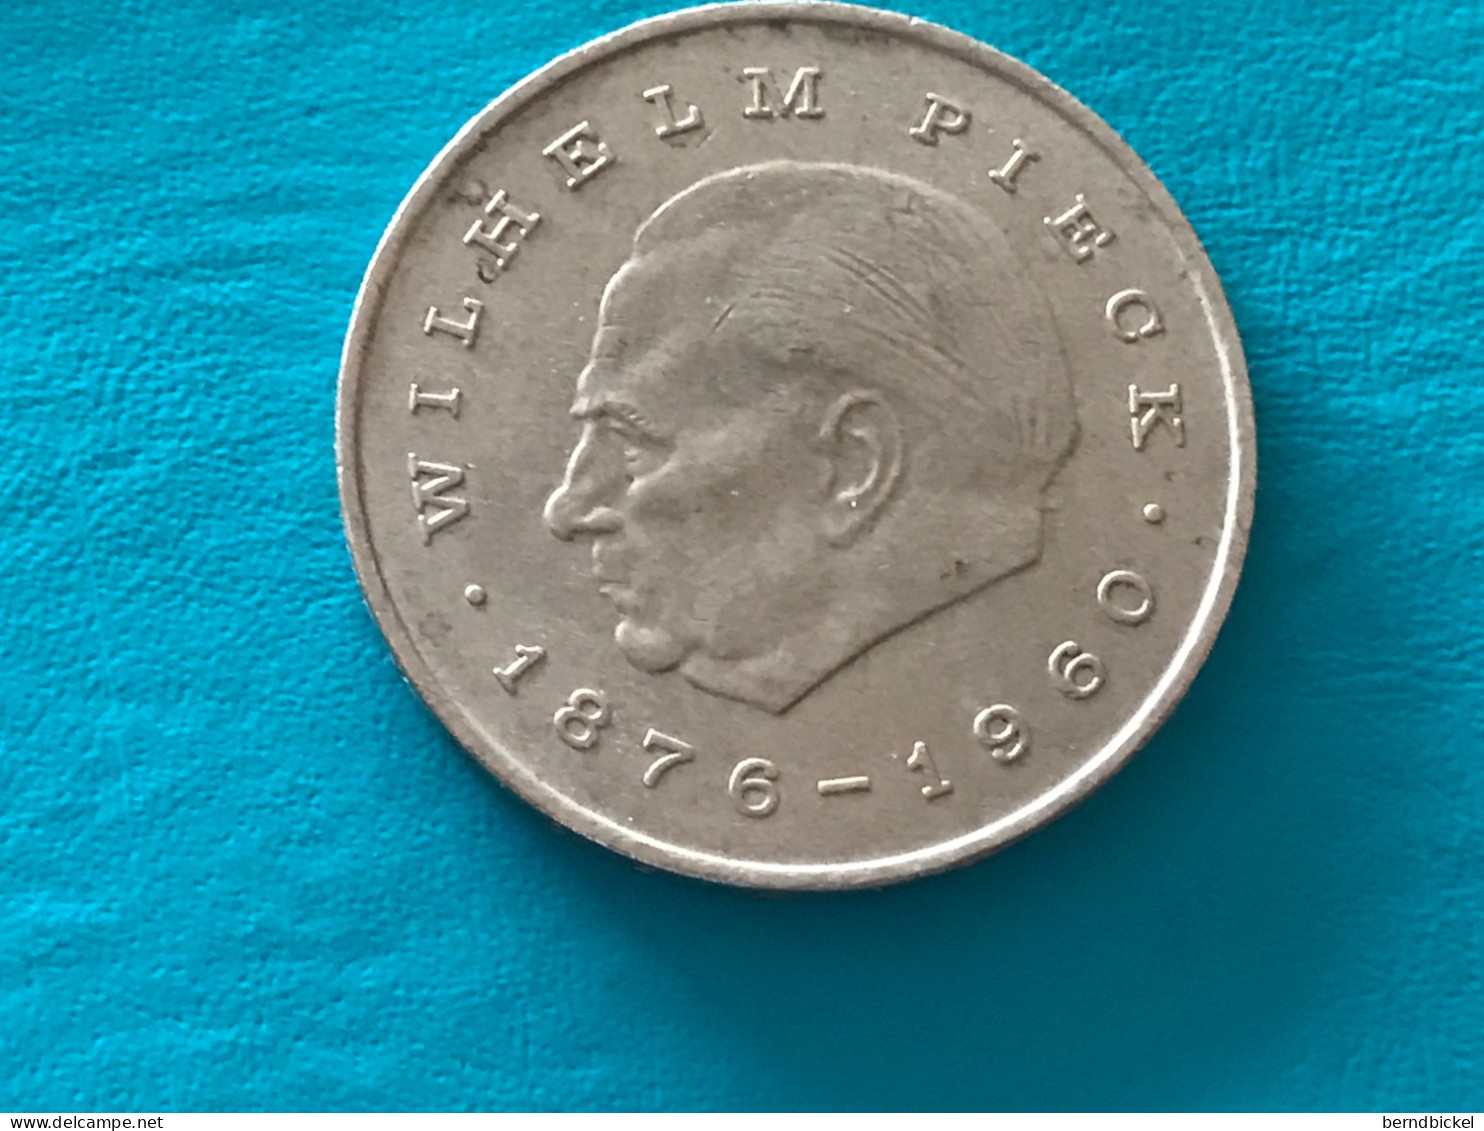 Münze Münzen Umlaufmünze Gedenkmünze Deutschland DDR 20 Mark 1972 Wilhelm Pieck - 20 Mark